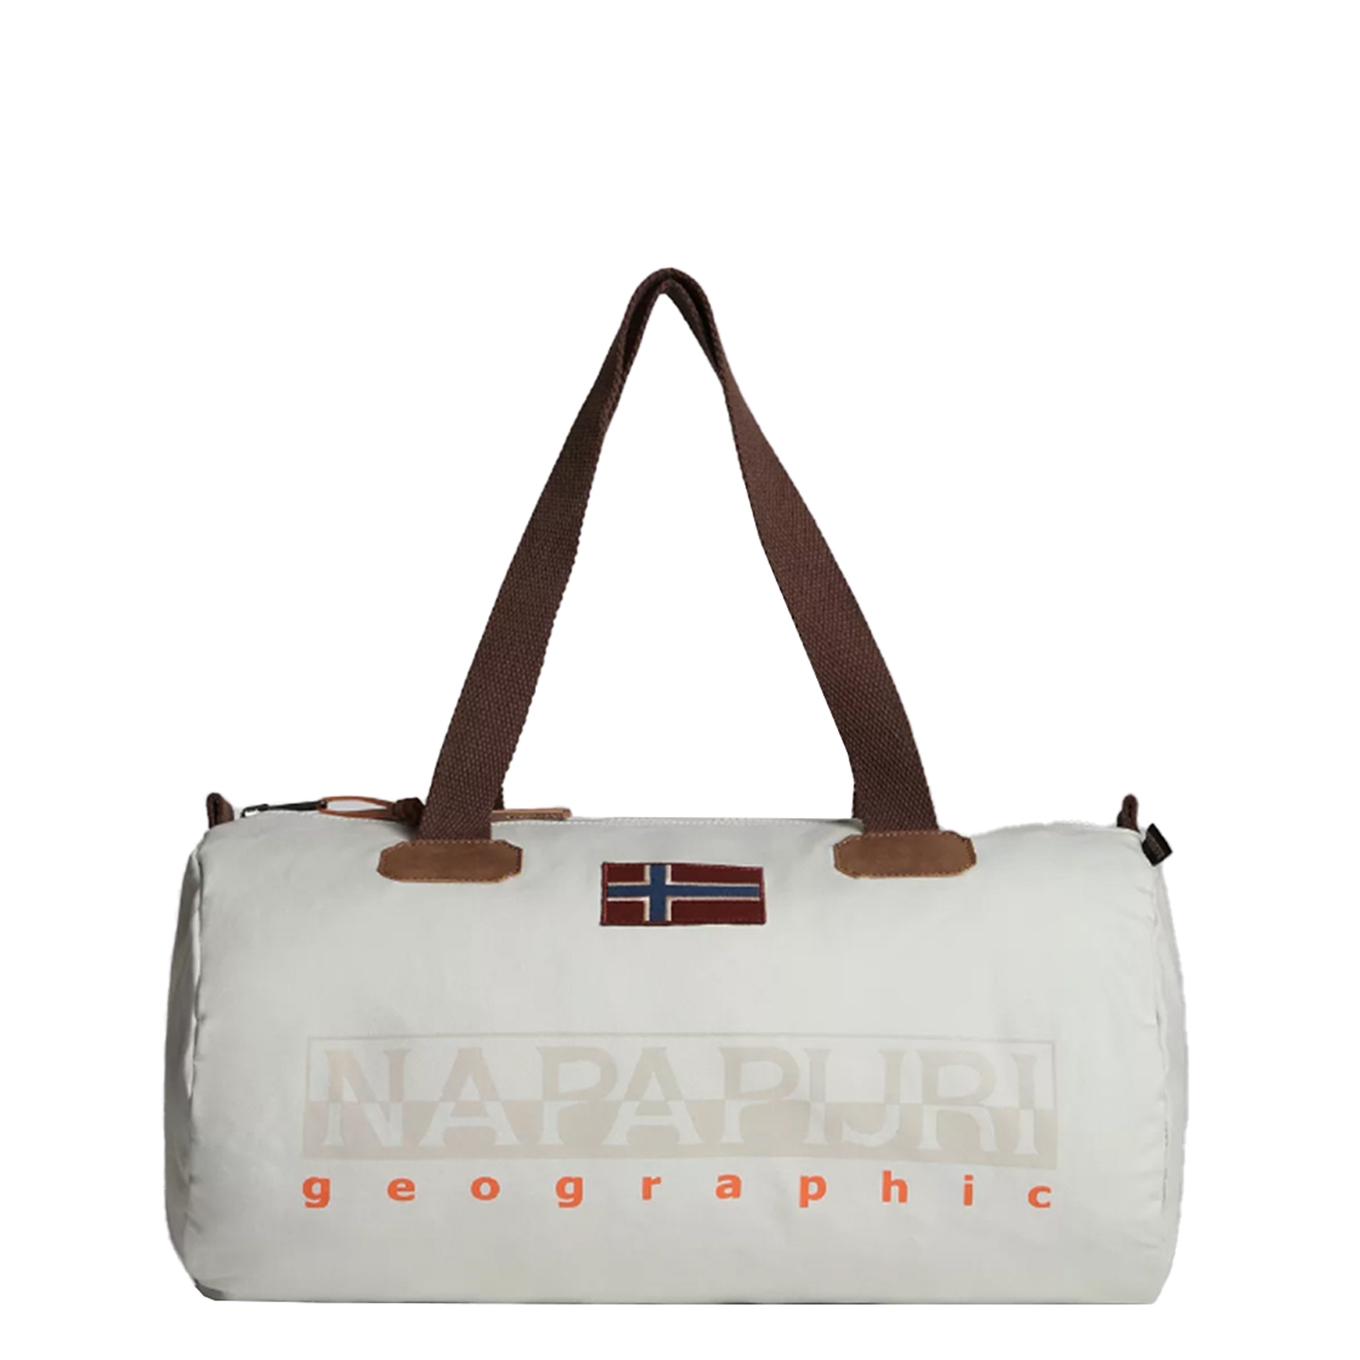 Uitsteken doen alsof schommel Napapijri Bering Travelbag S beige silvr | Travelbags.be